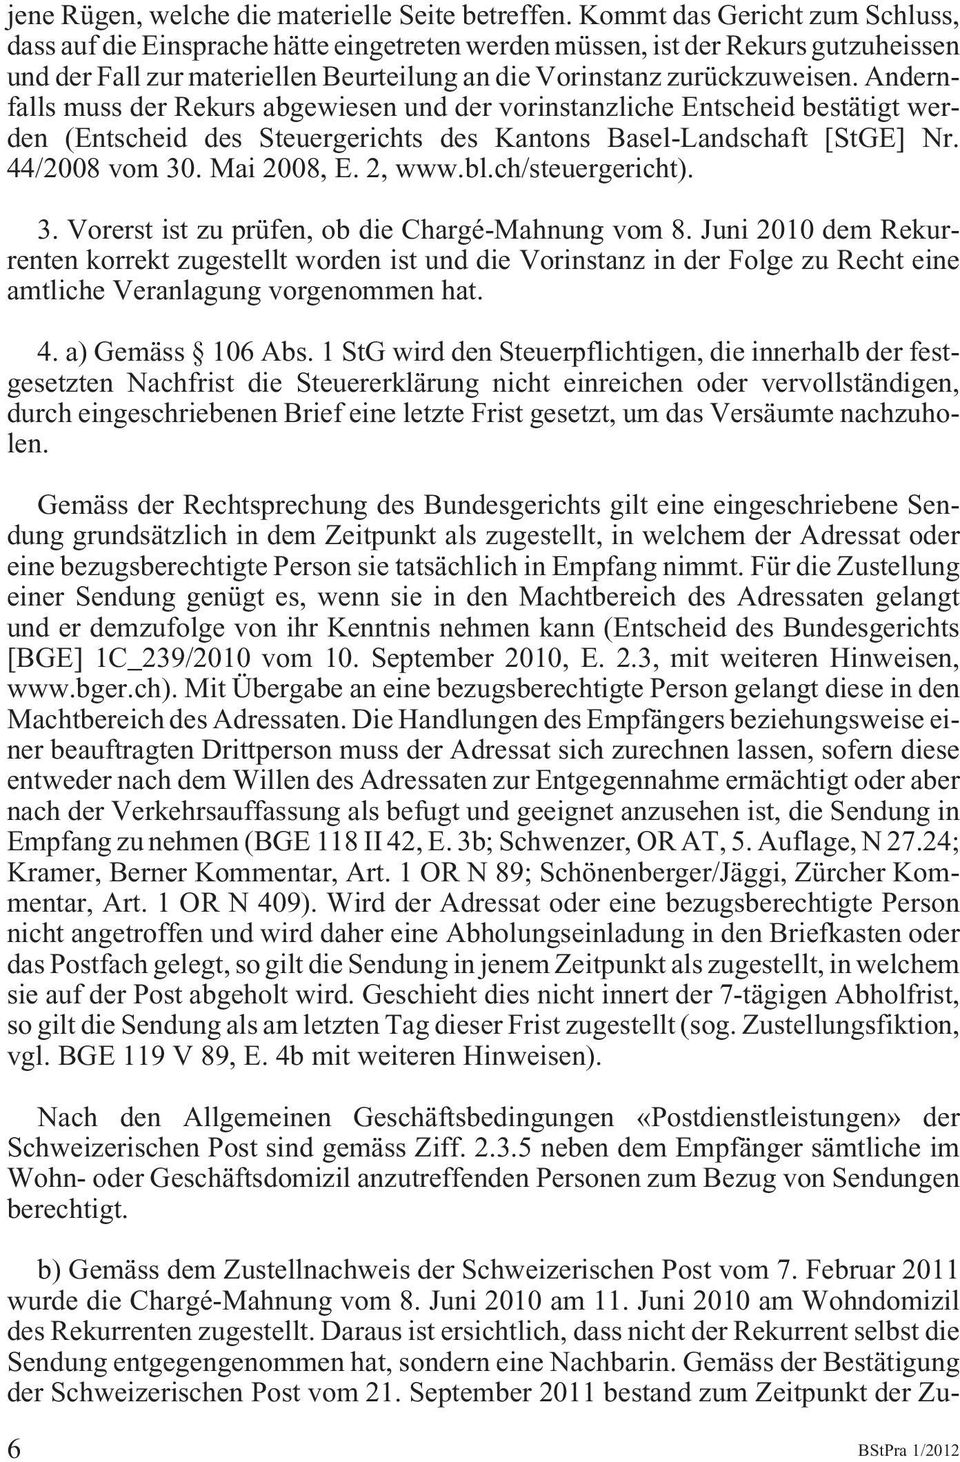 Andernfalls muss der Rekurs abgewiesen und der vorinstanzliche Entscheid bestätigt werden (Entscheid des Steuergerichts des Kantons Basel-Landschaft [StGE] Nr. 44/2008 vom 30. Mai 2008, E. 2, www.bl.